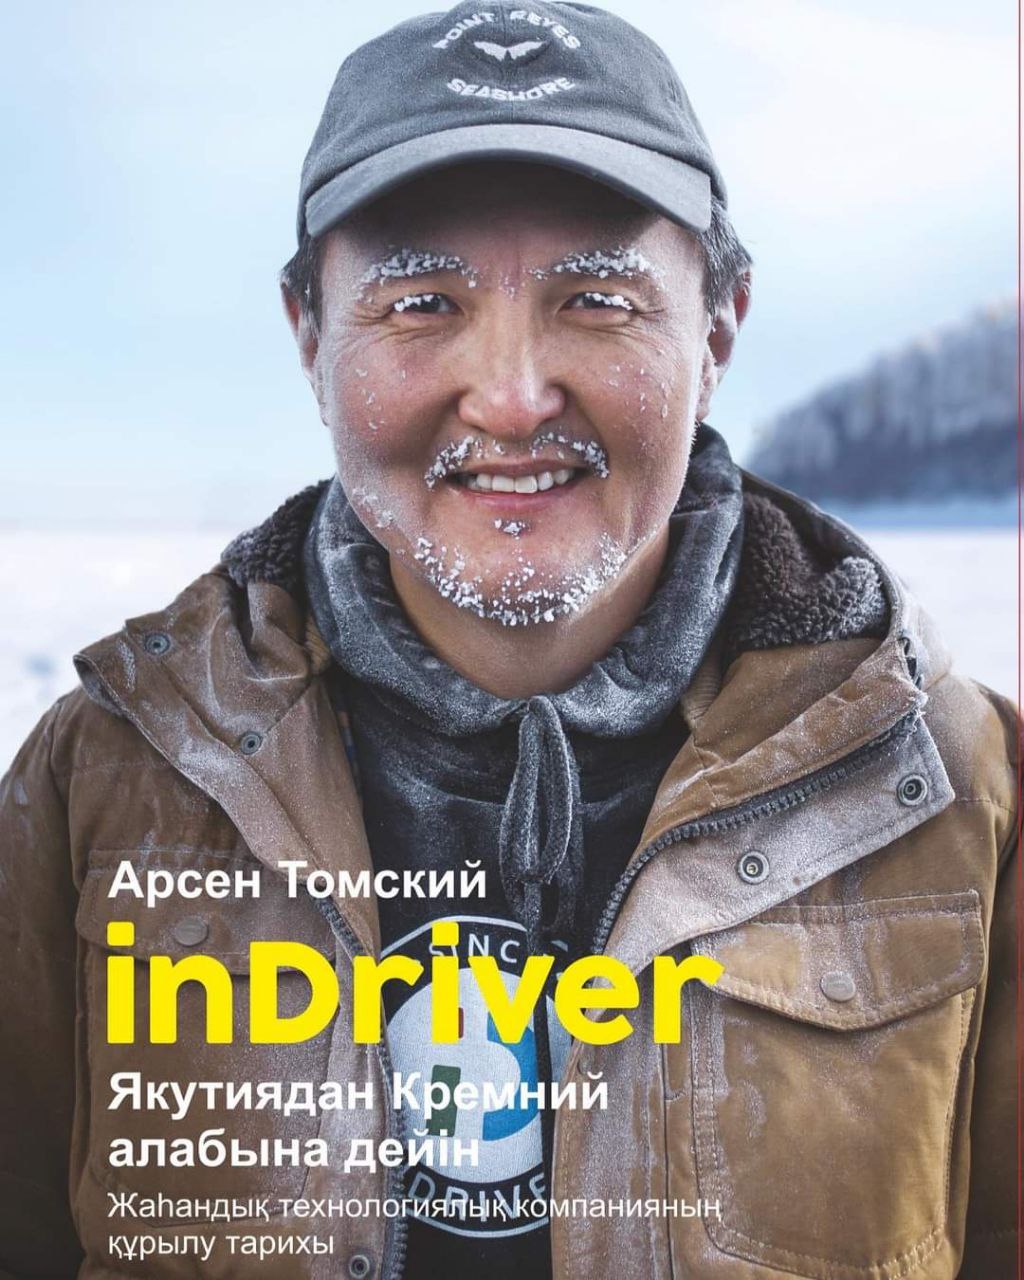 Арсен Томский выпустил книгу в Казахстане